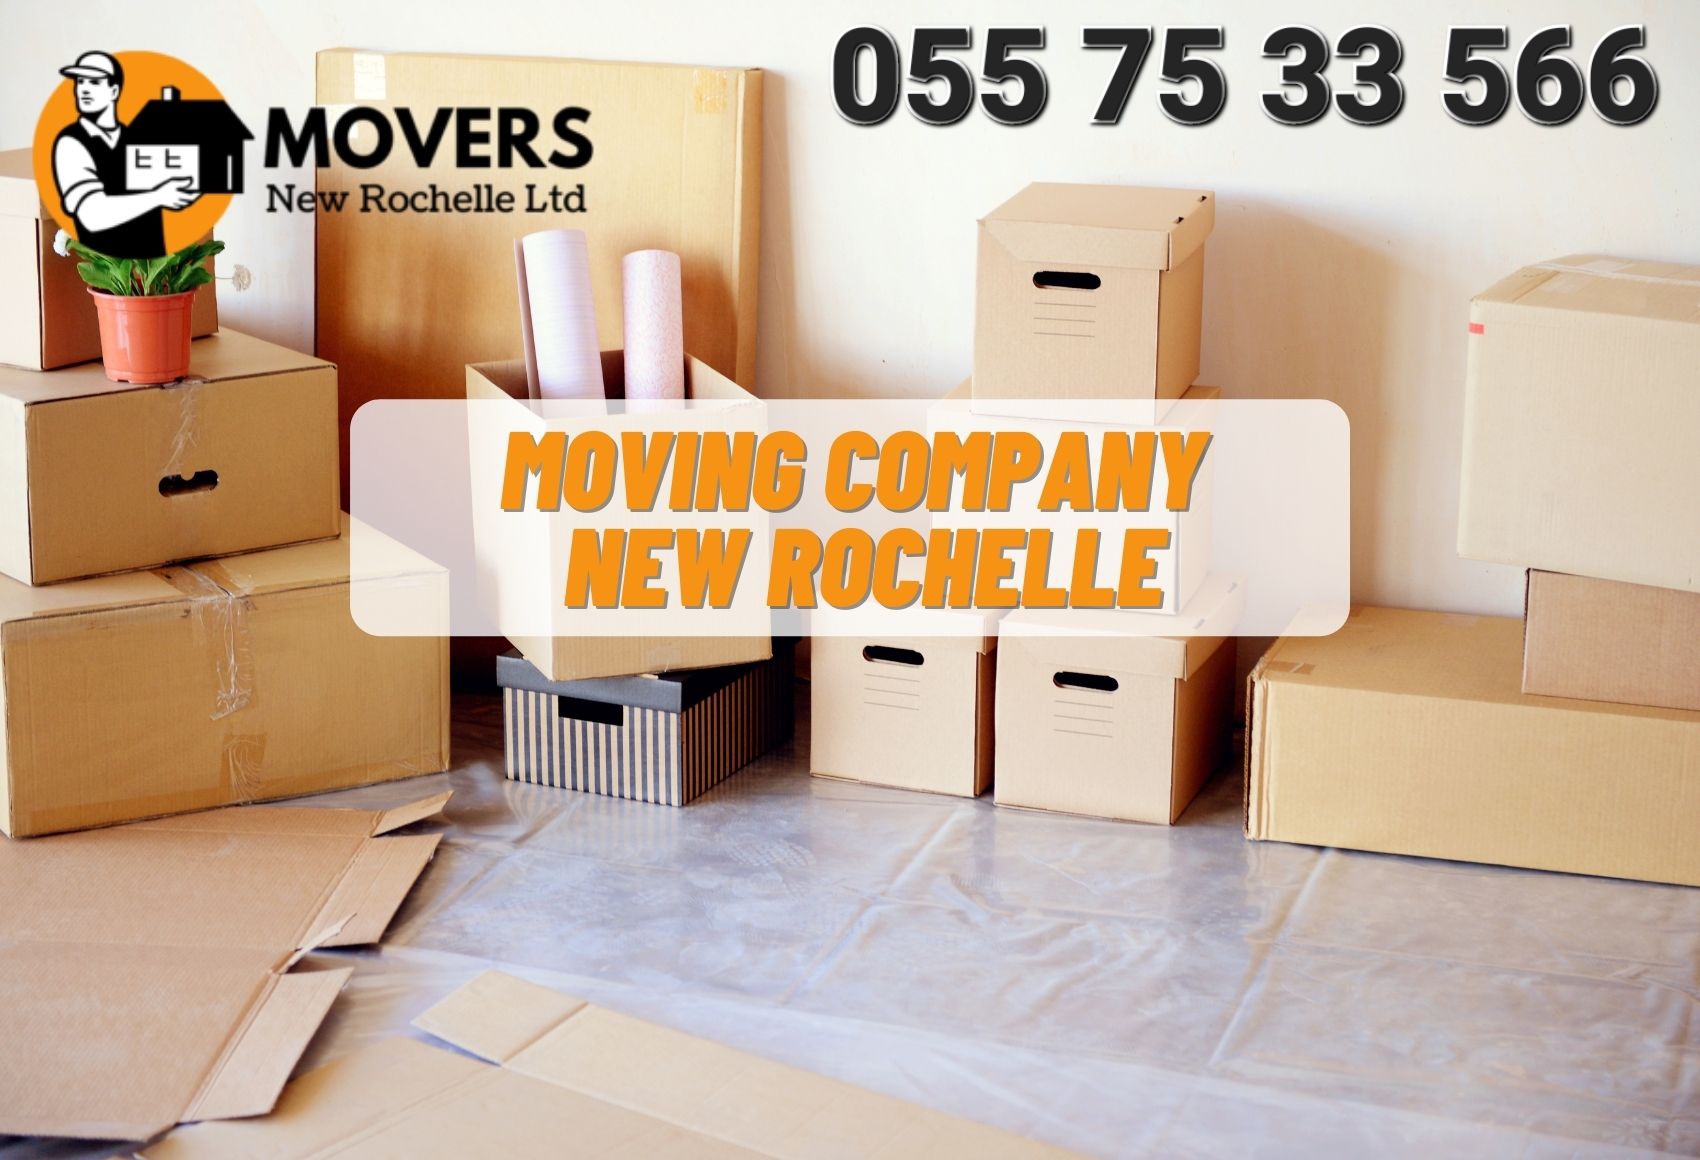 Moving Company New Rochelle Ny.jpg